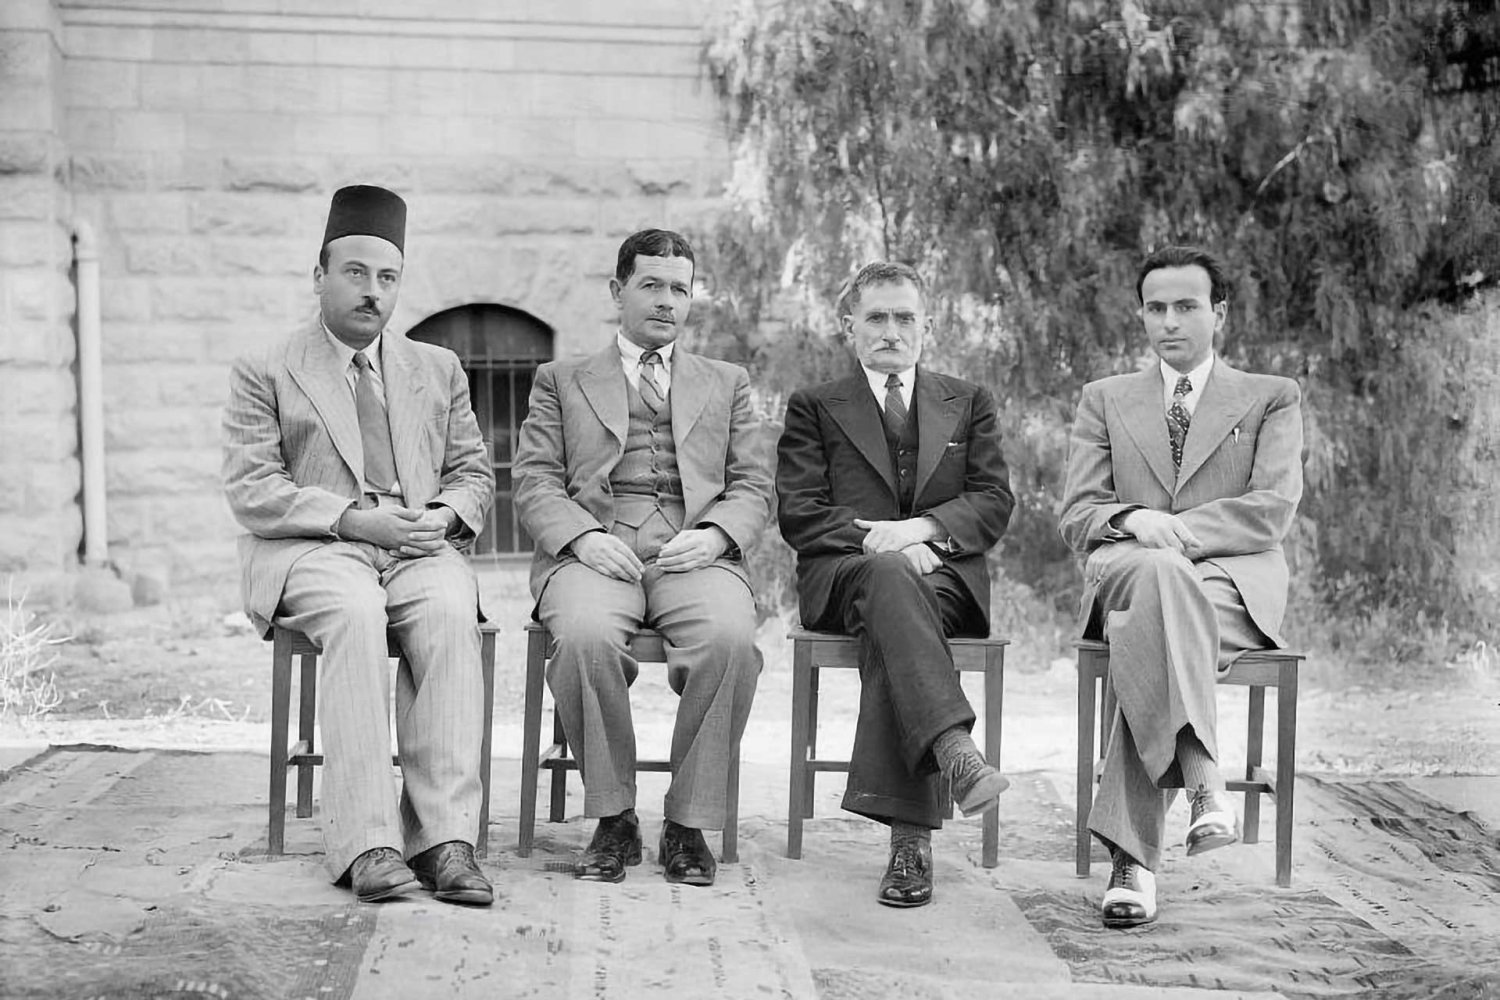 Omar al-Barghouti, Adel Jabre, Khalil Beidas, and Yousef Haikal, commentators on the Palestine Broadcasting Service in Jerusalem, ca. 1938.